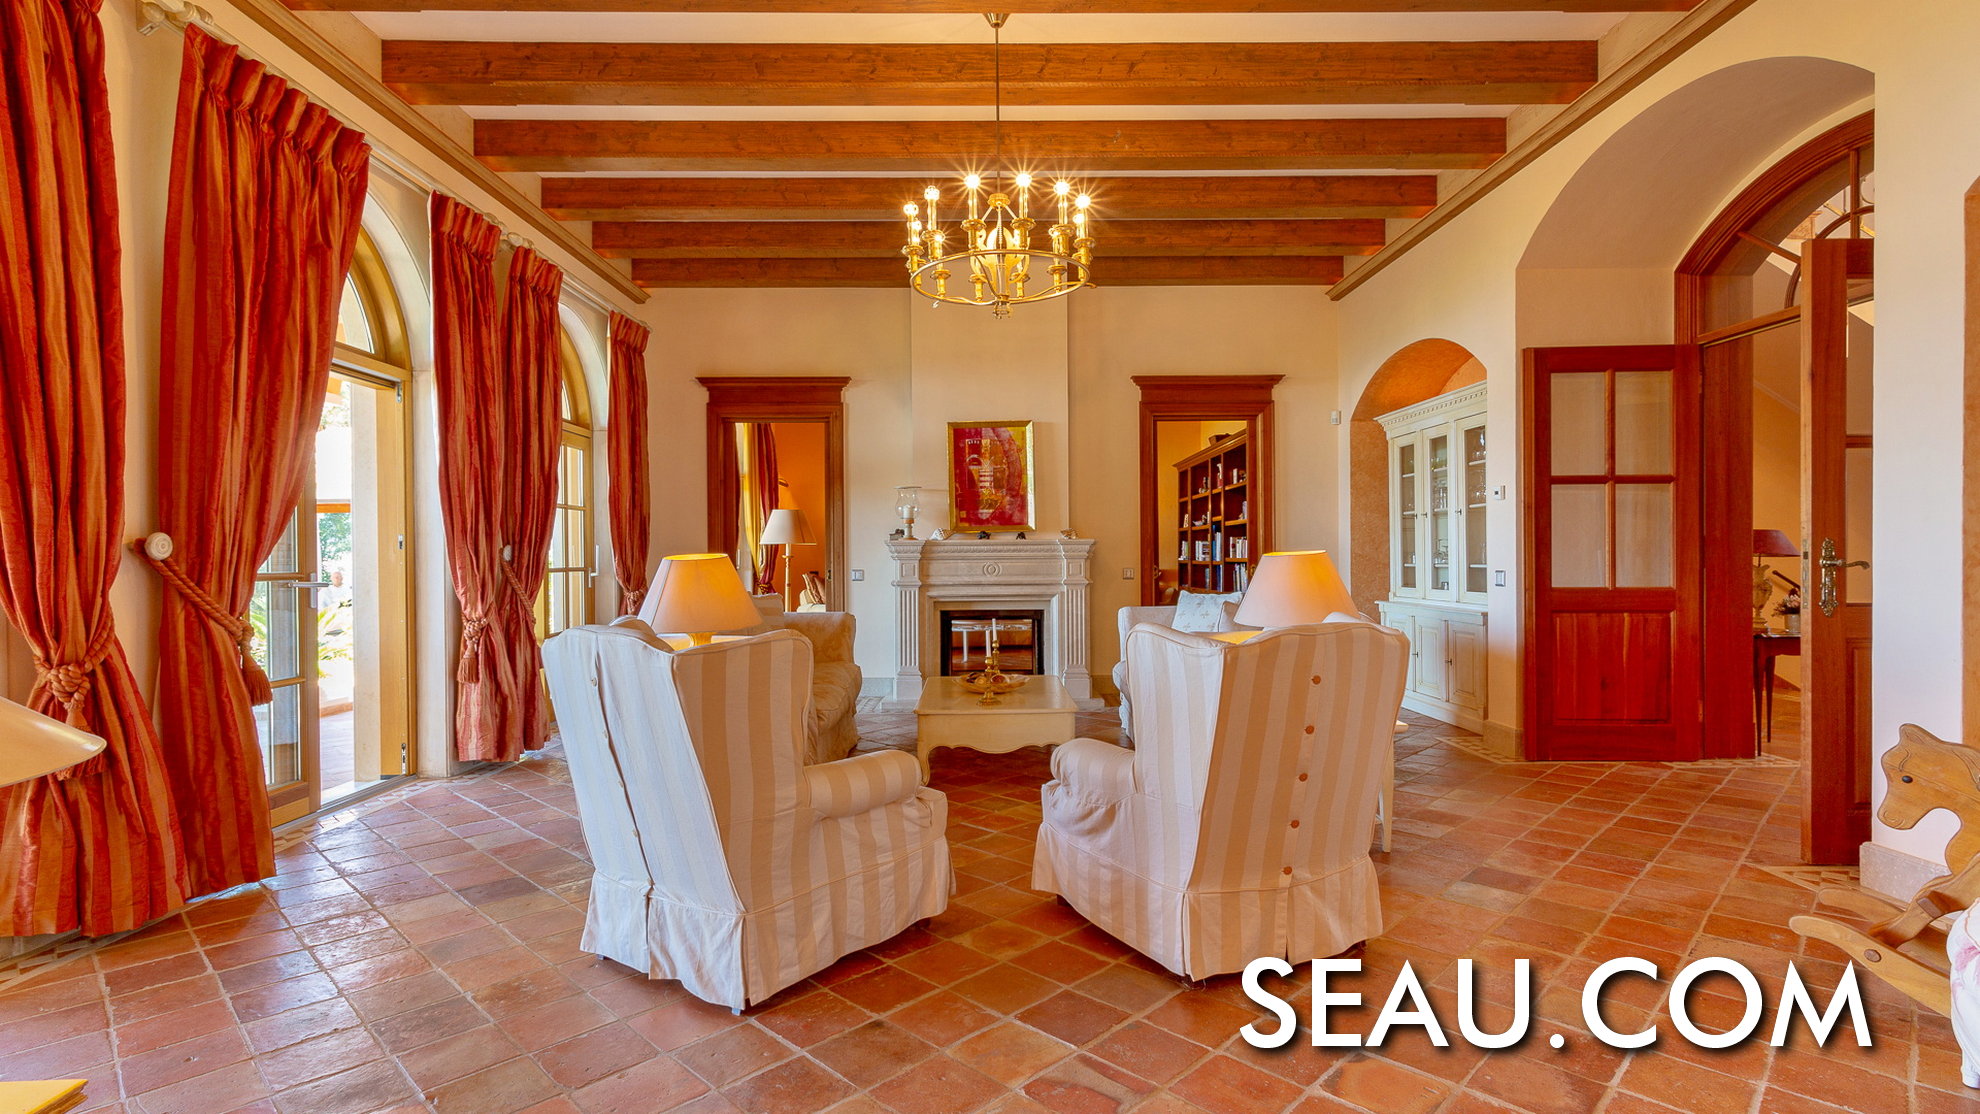 El salón es un espacio acogedor, rodeado de maderas nobles y materiales de piedra natural.